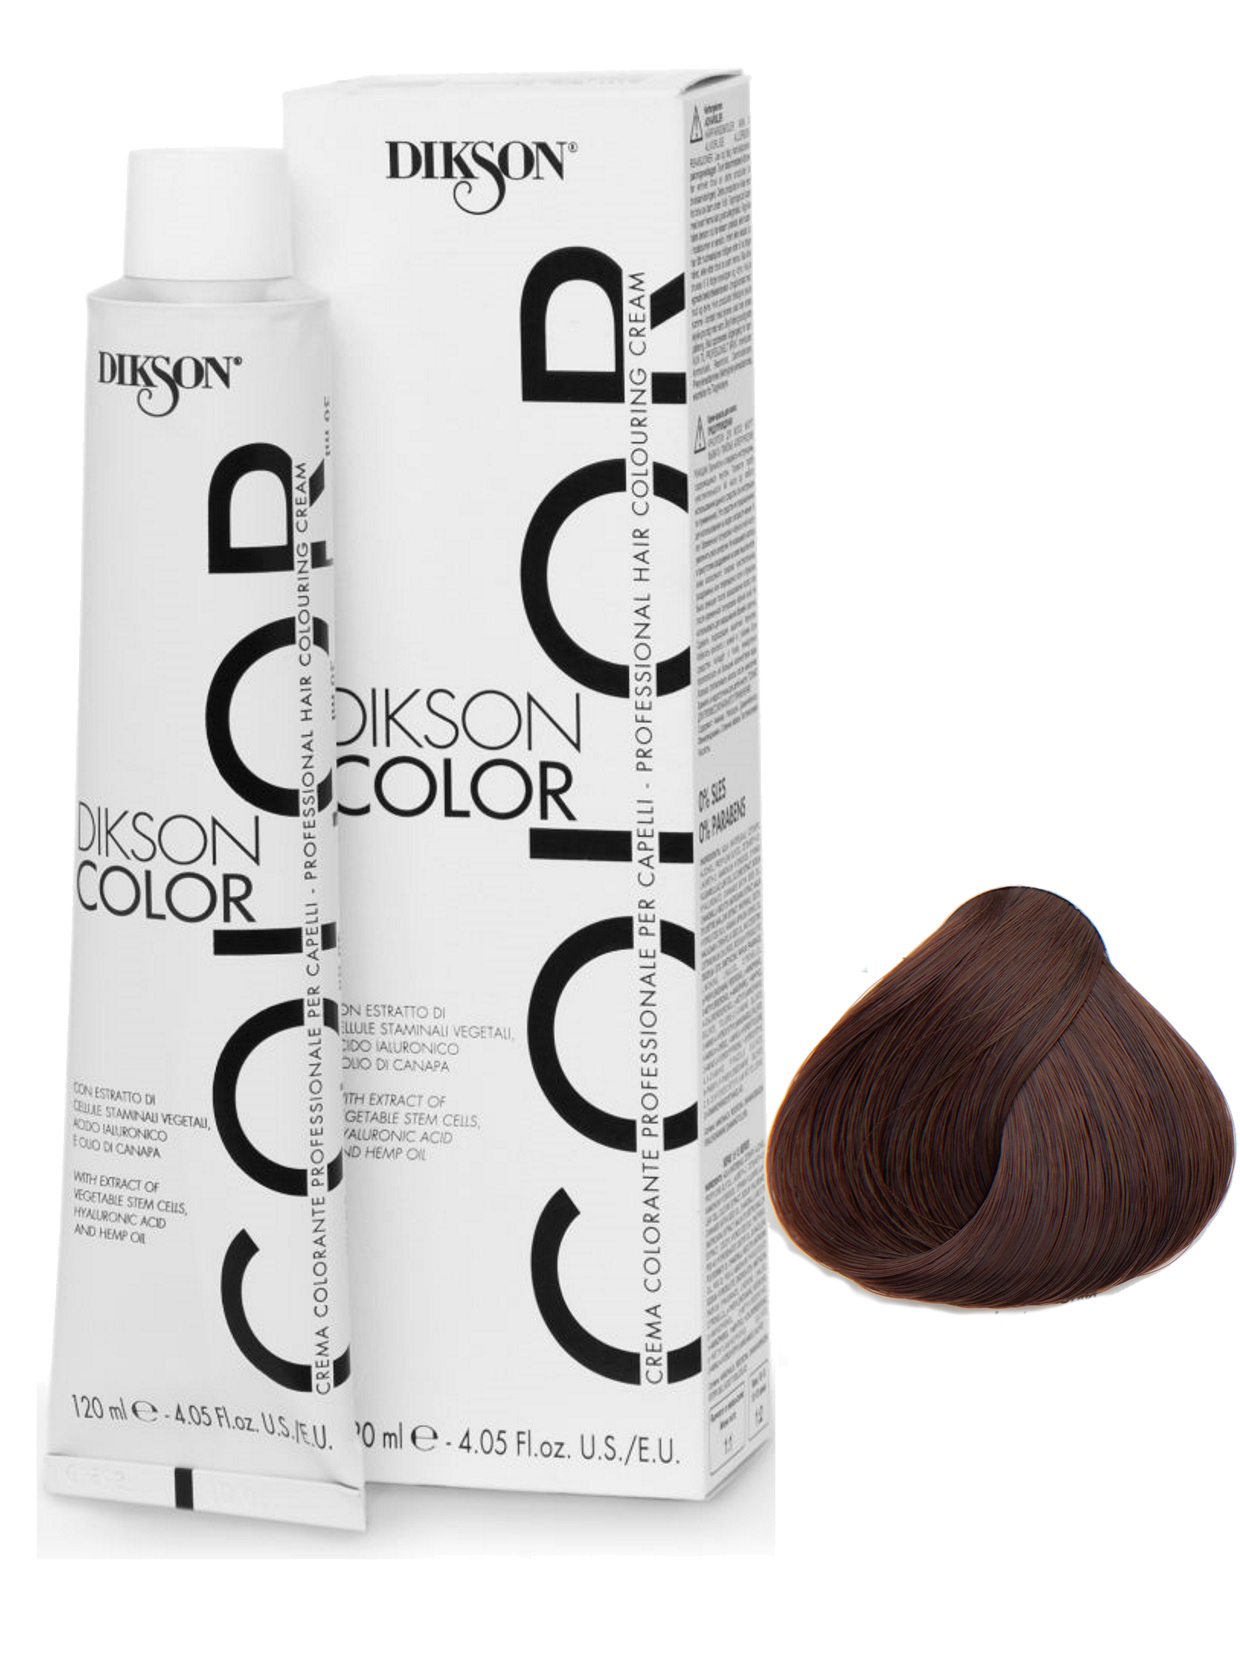 DIKSON Color Краска для волос, оттенок 9.0 9N (очень светло-русый)